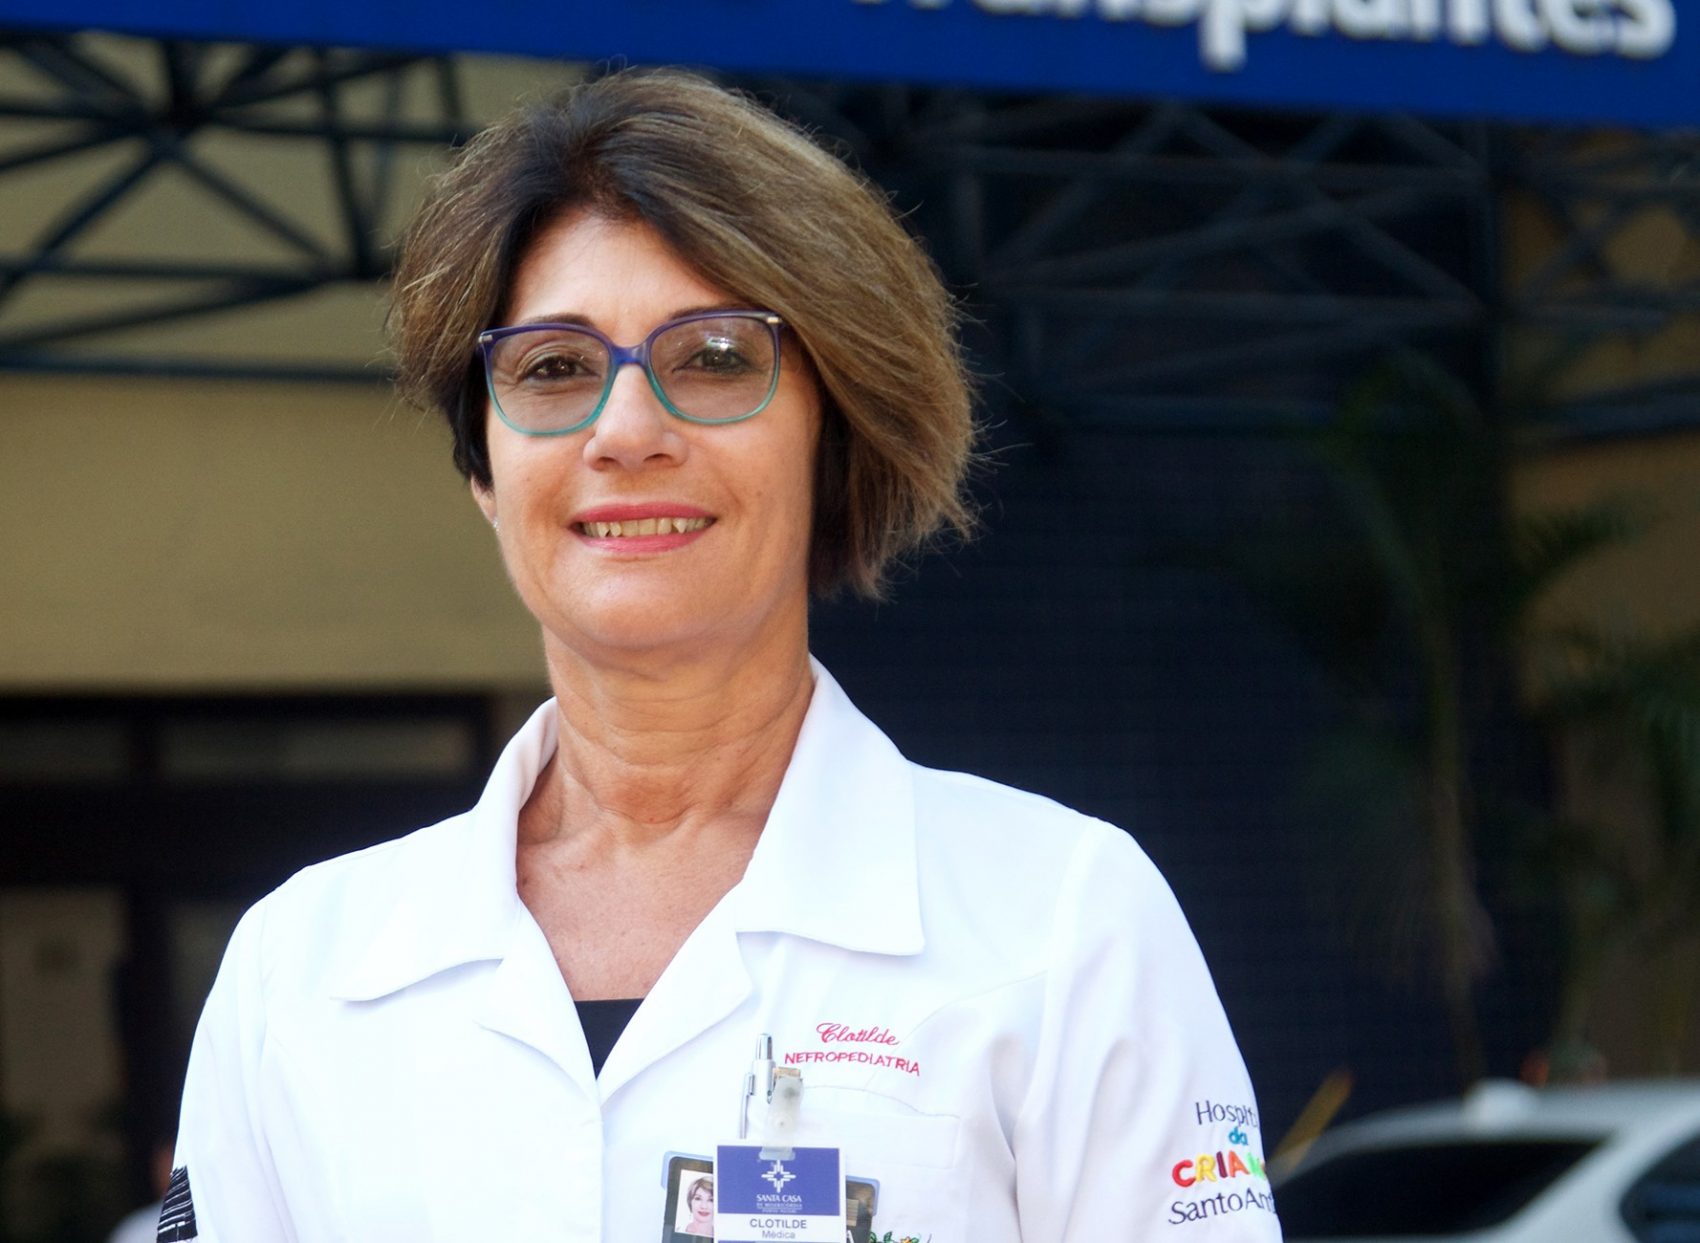 Clotilde Druck Garcia é é professora de Nefrologia da Universidade Federal de Ciências da Saúde de Porto Alegre, médica da Nefrologia Pediátrica da Santa Casa de Porto Alegre e coordenadora do departamento de transplante pediátrico da Associação Brasileira de Transplantes de Órgãos